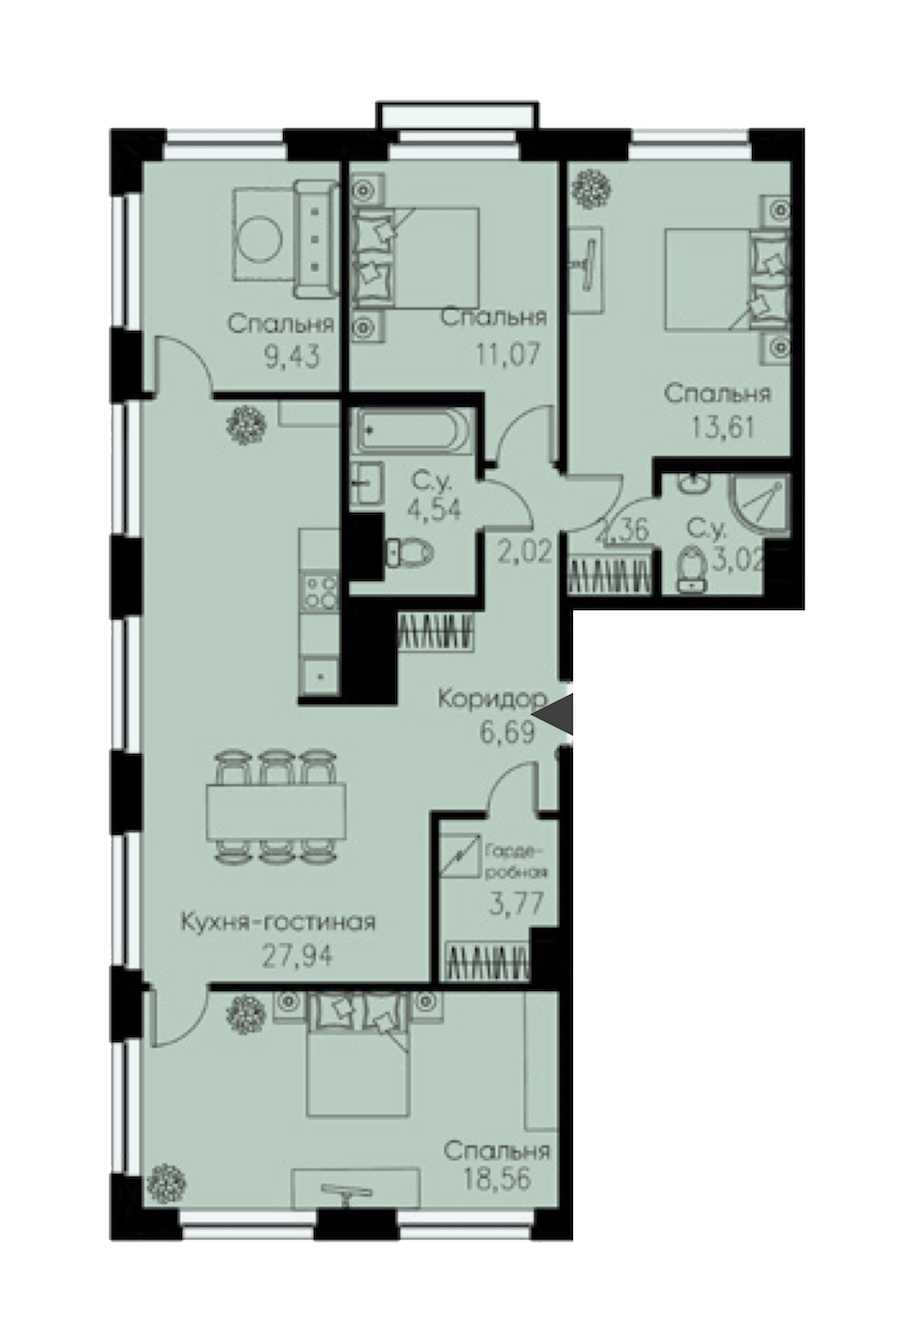 Четырехкомнатная квартира в Евроинвест девелопмент: площадь 103.01 м2 , этаж: 10 – купить в Санкт-Петербурге